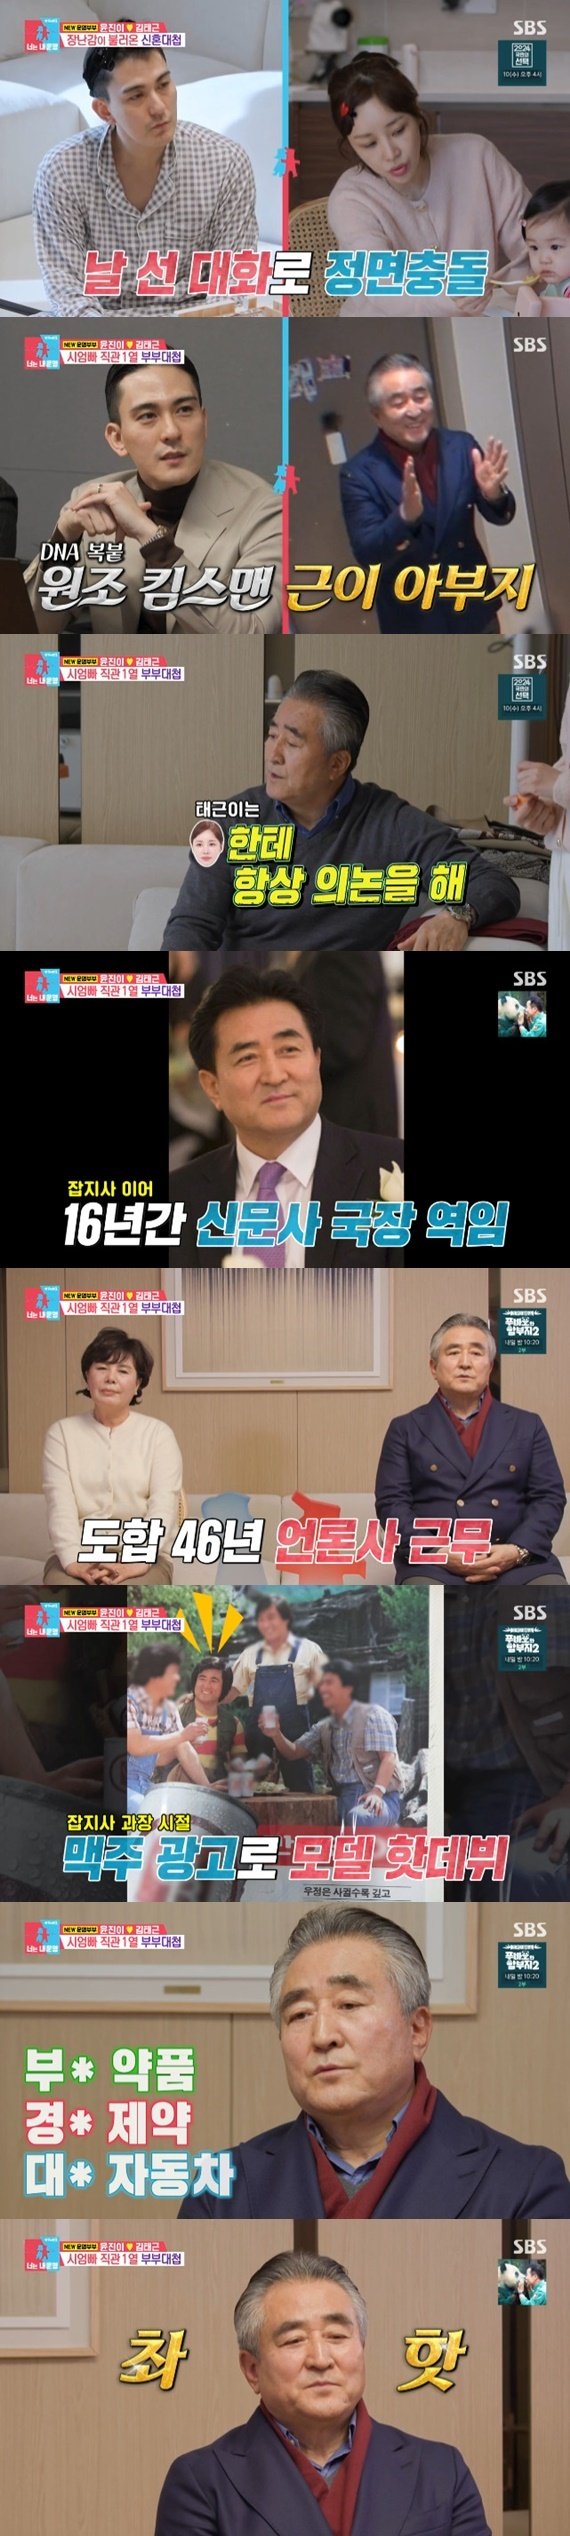 윤진이 시아버지, 언론사 46년 근무→광고 모델 활동까지 [RE:TV]